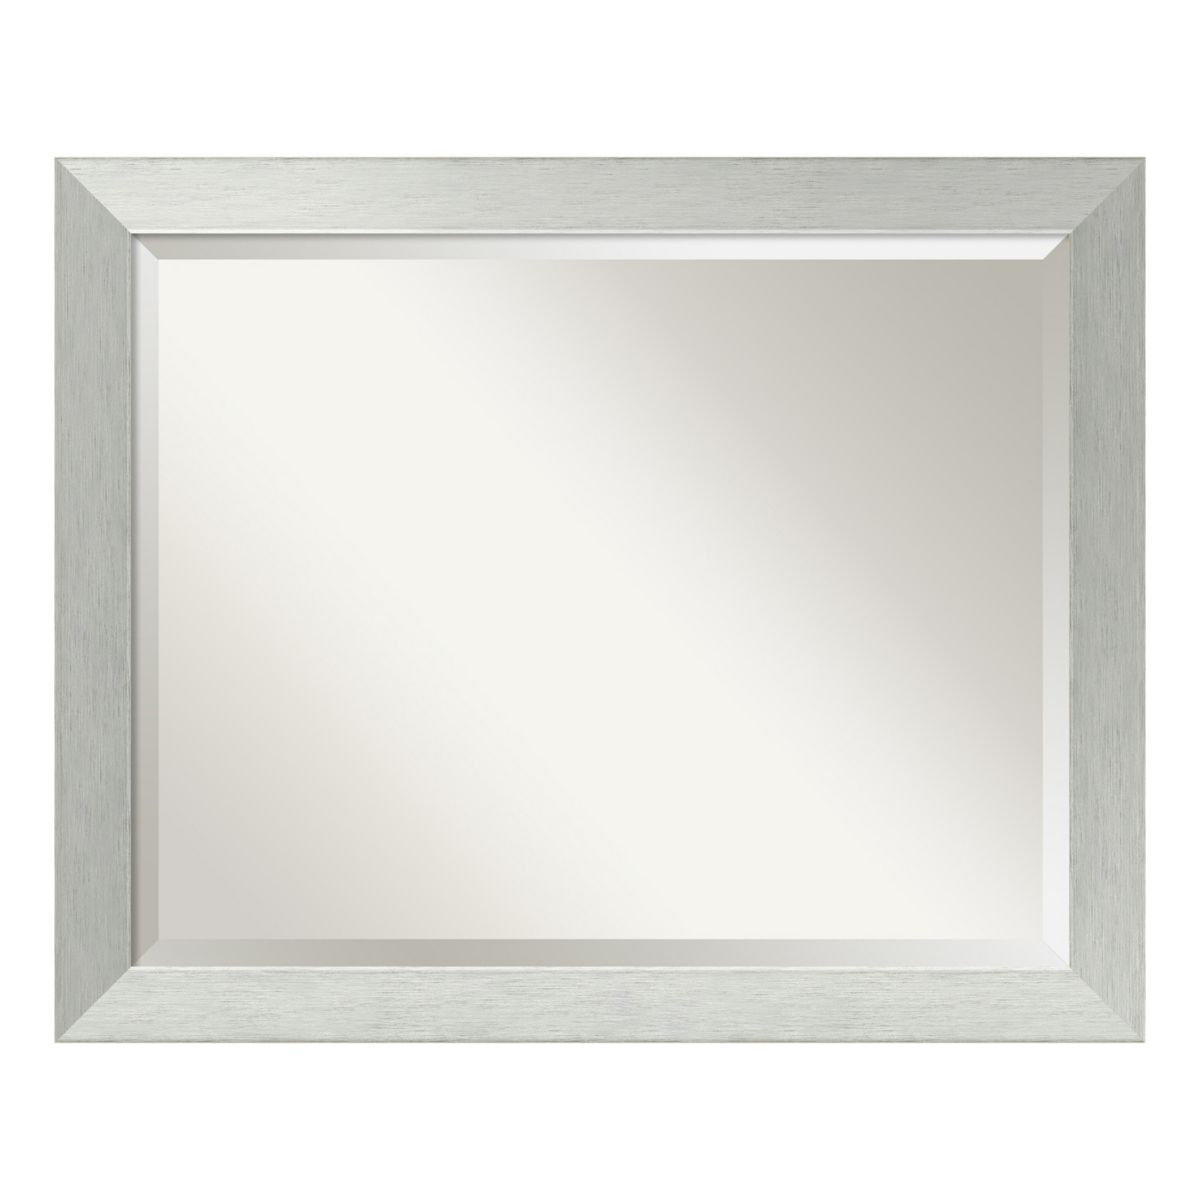 Большое настенное зеркало Amanti Art с матовой отделкой стерлингового серебра Liora Manne